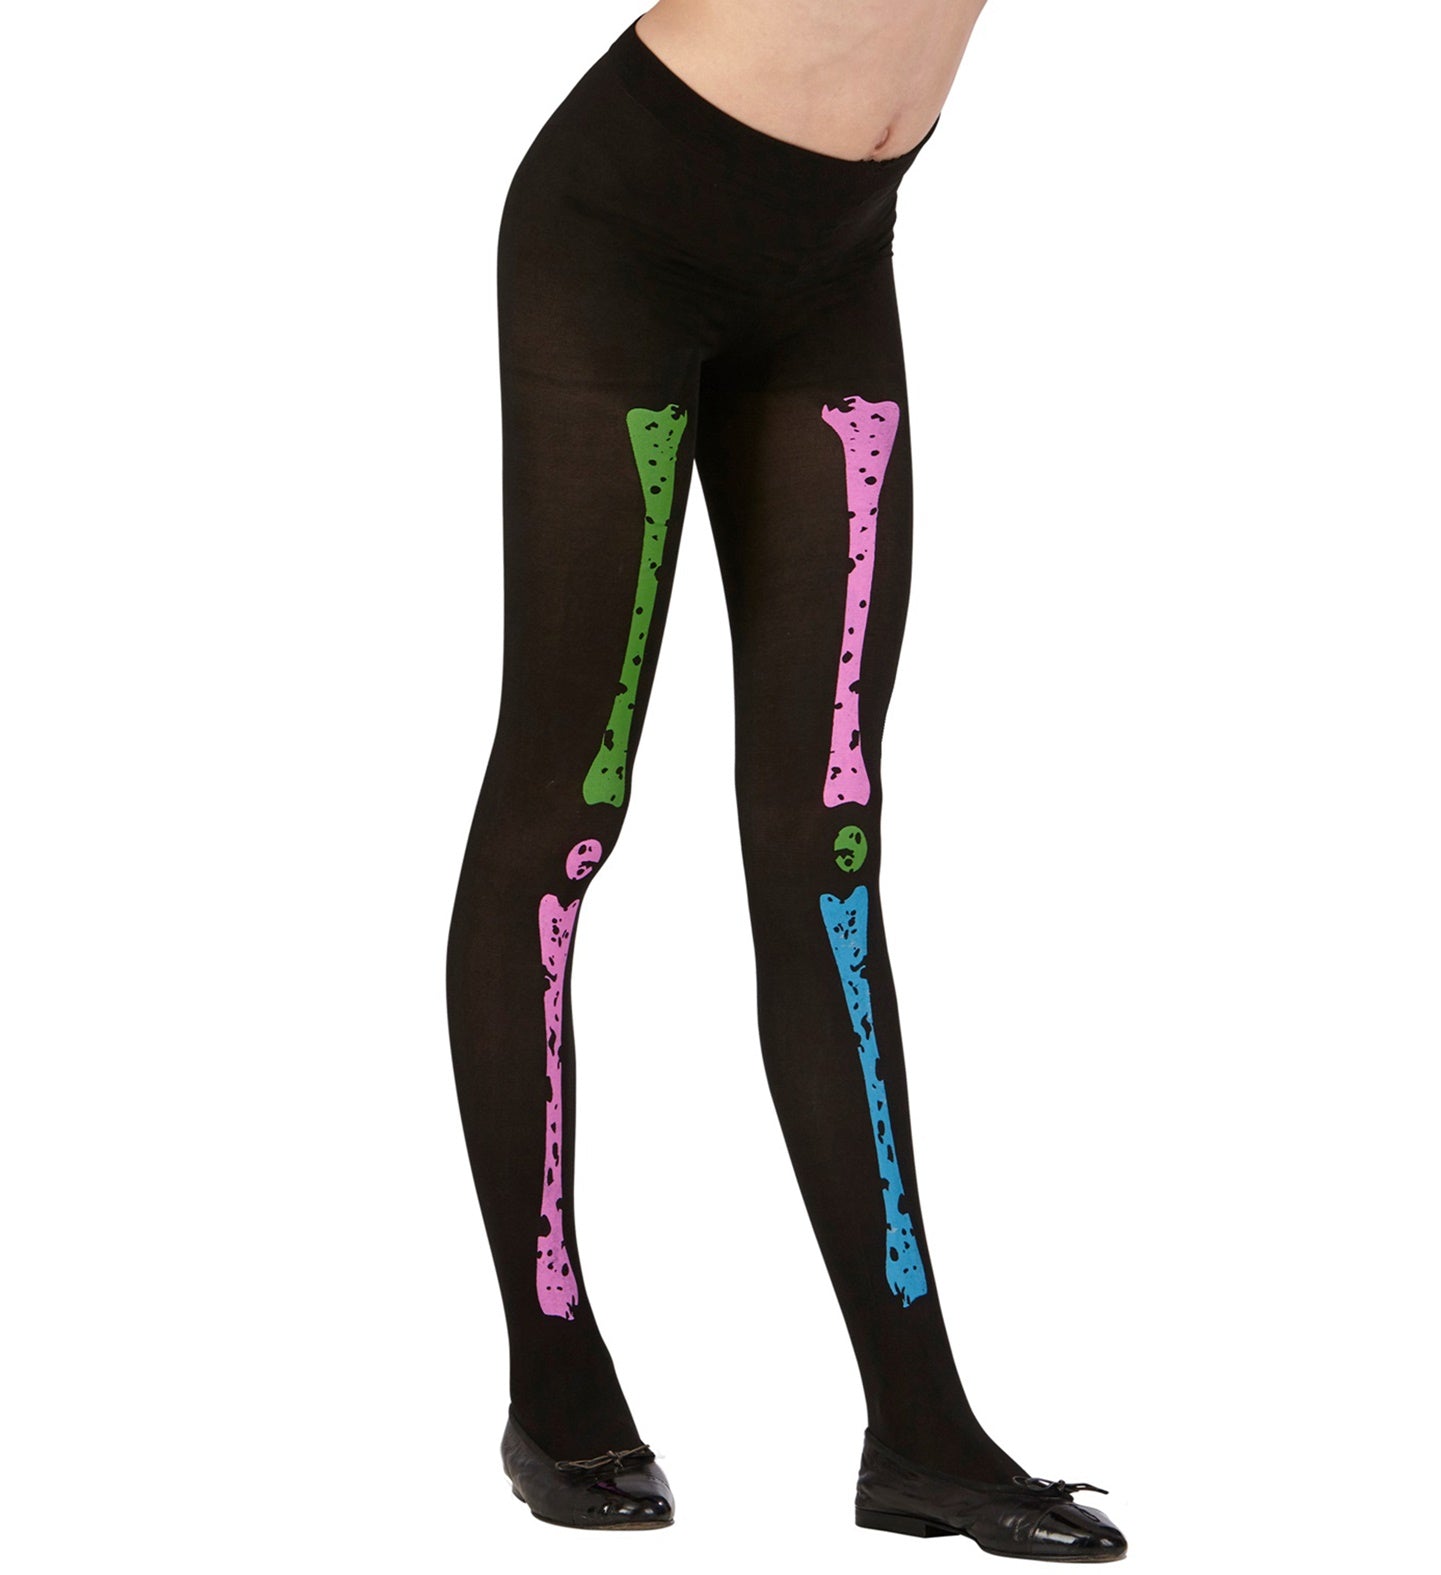 Children's Neon Skeleton stockings